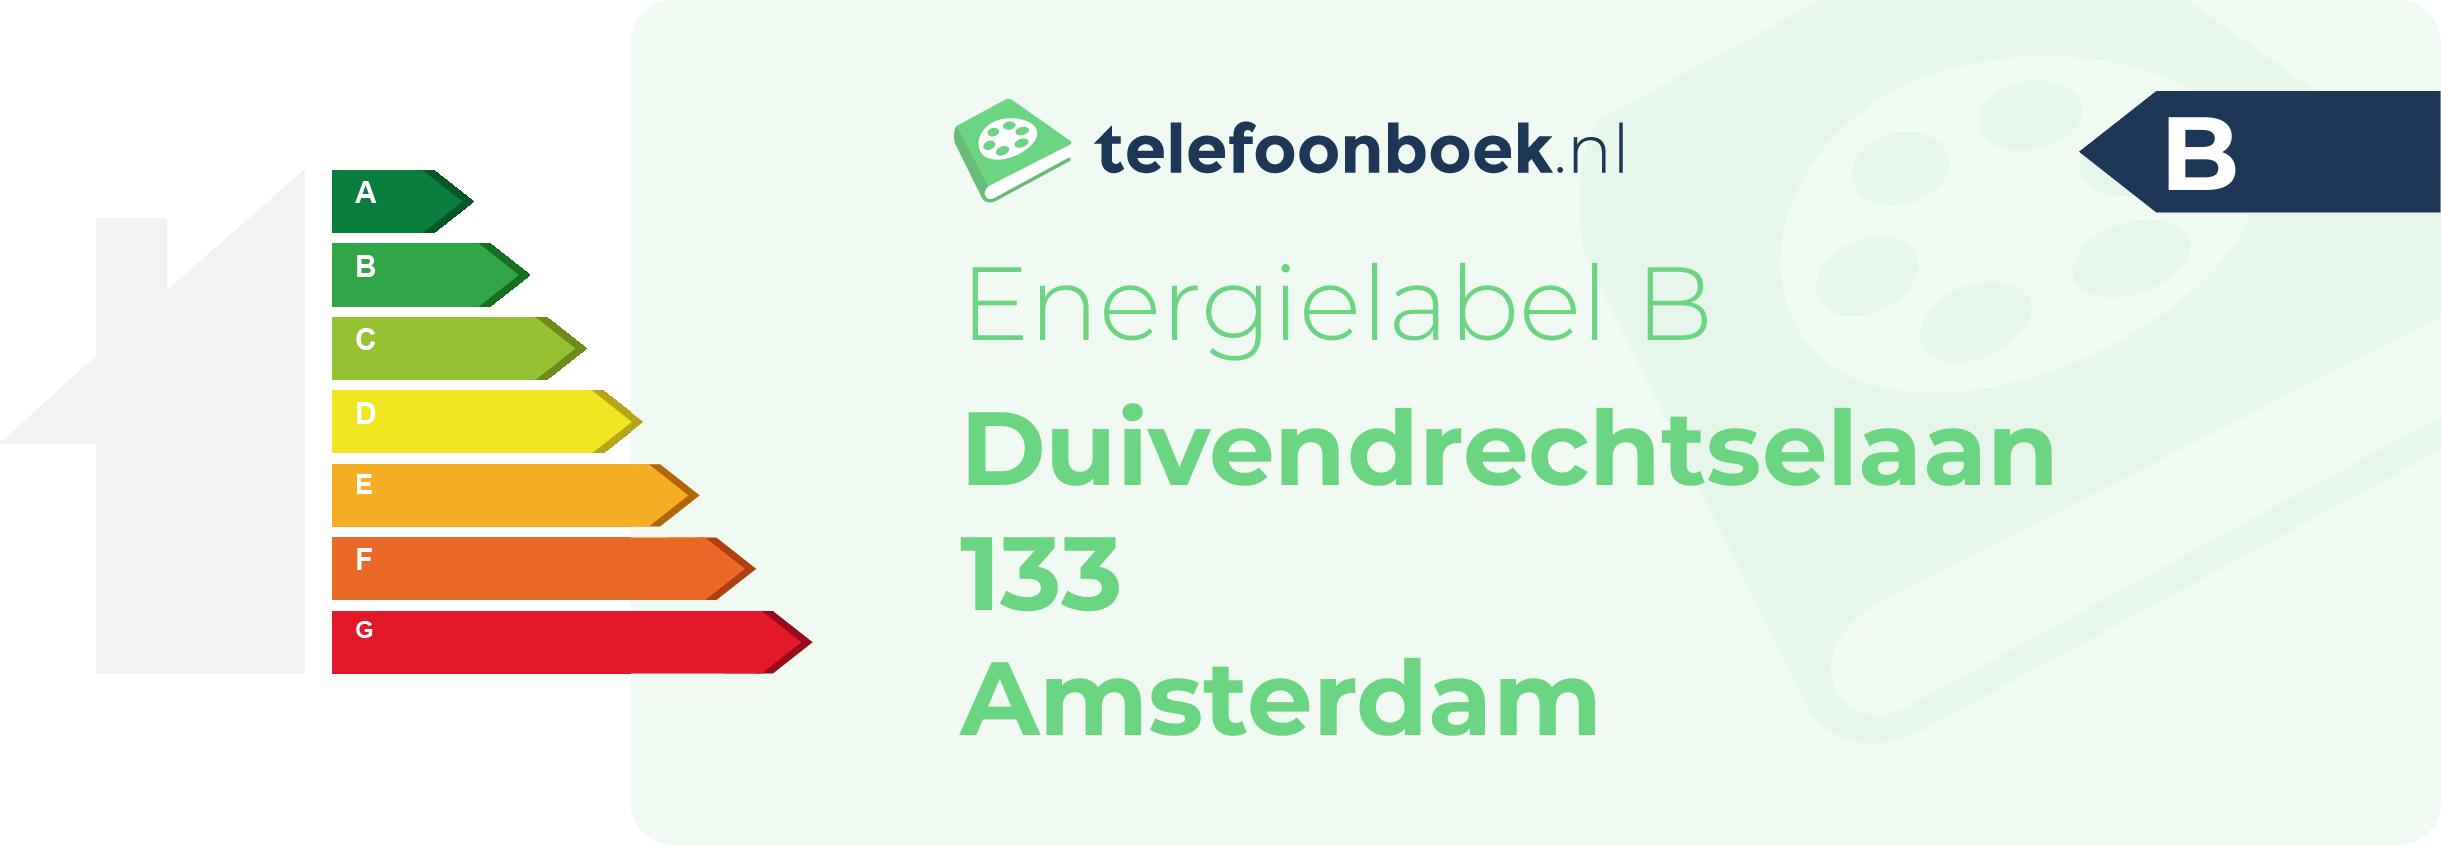 Energielabel Duivendrechtselaan 133 Amsterdam